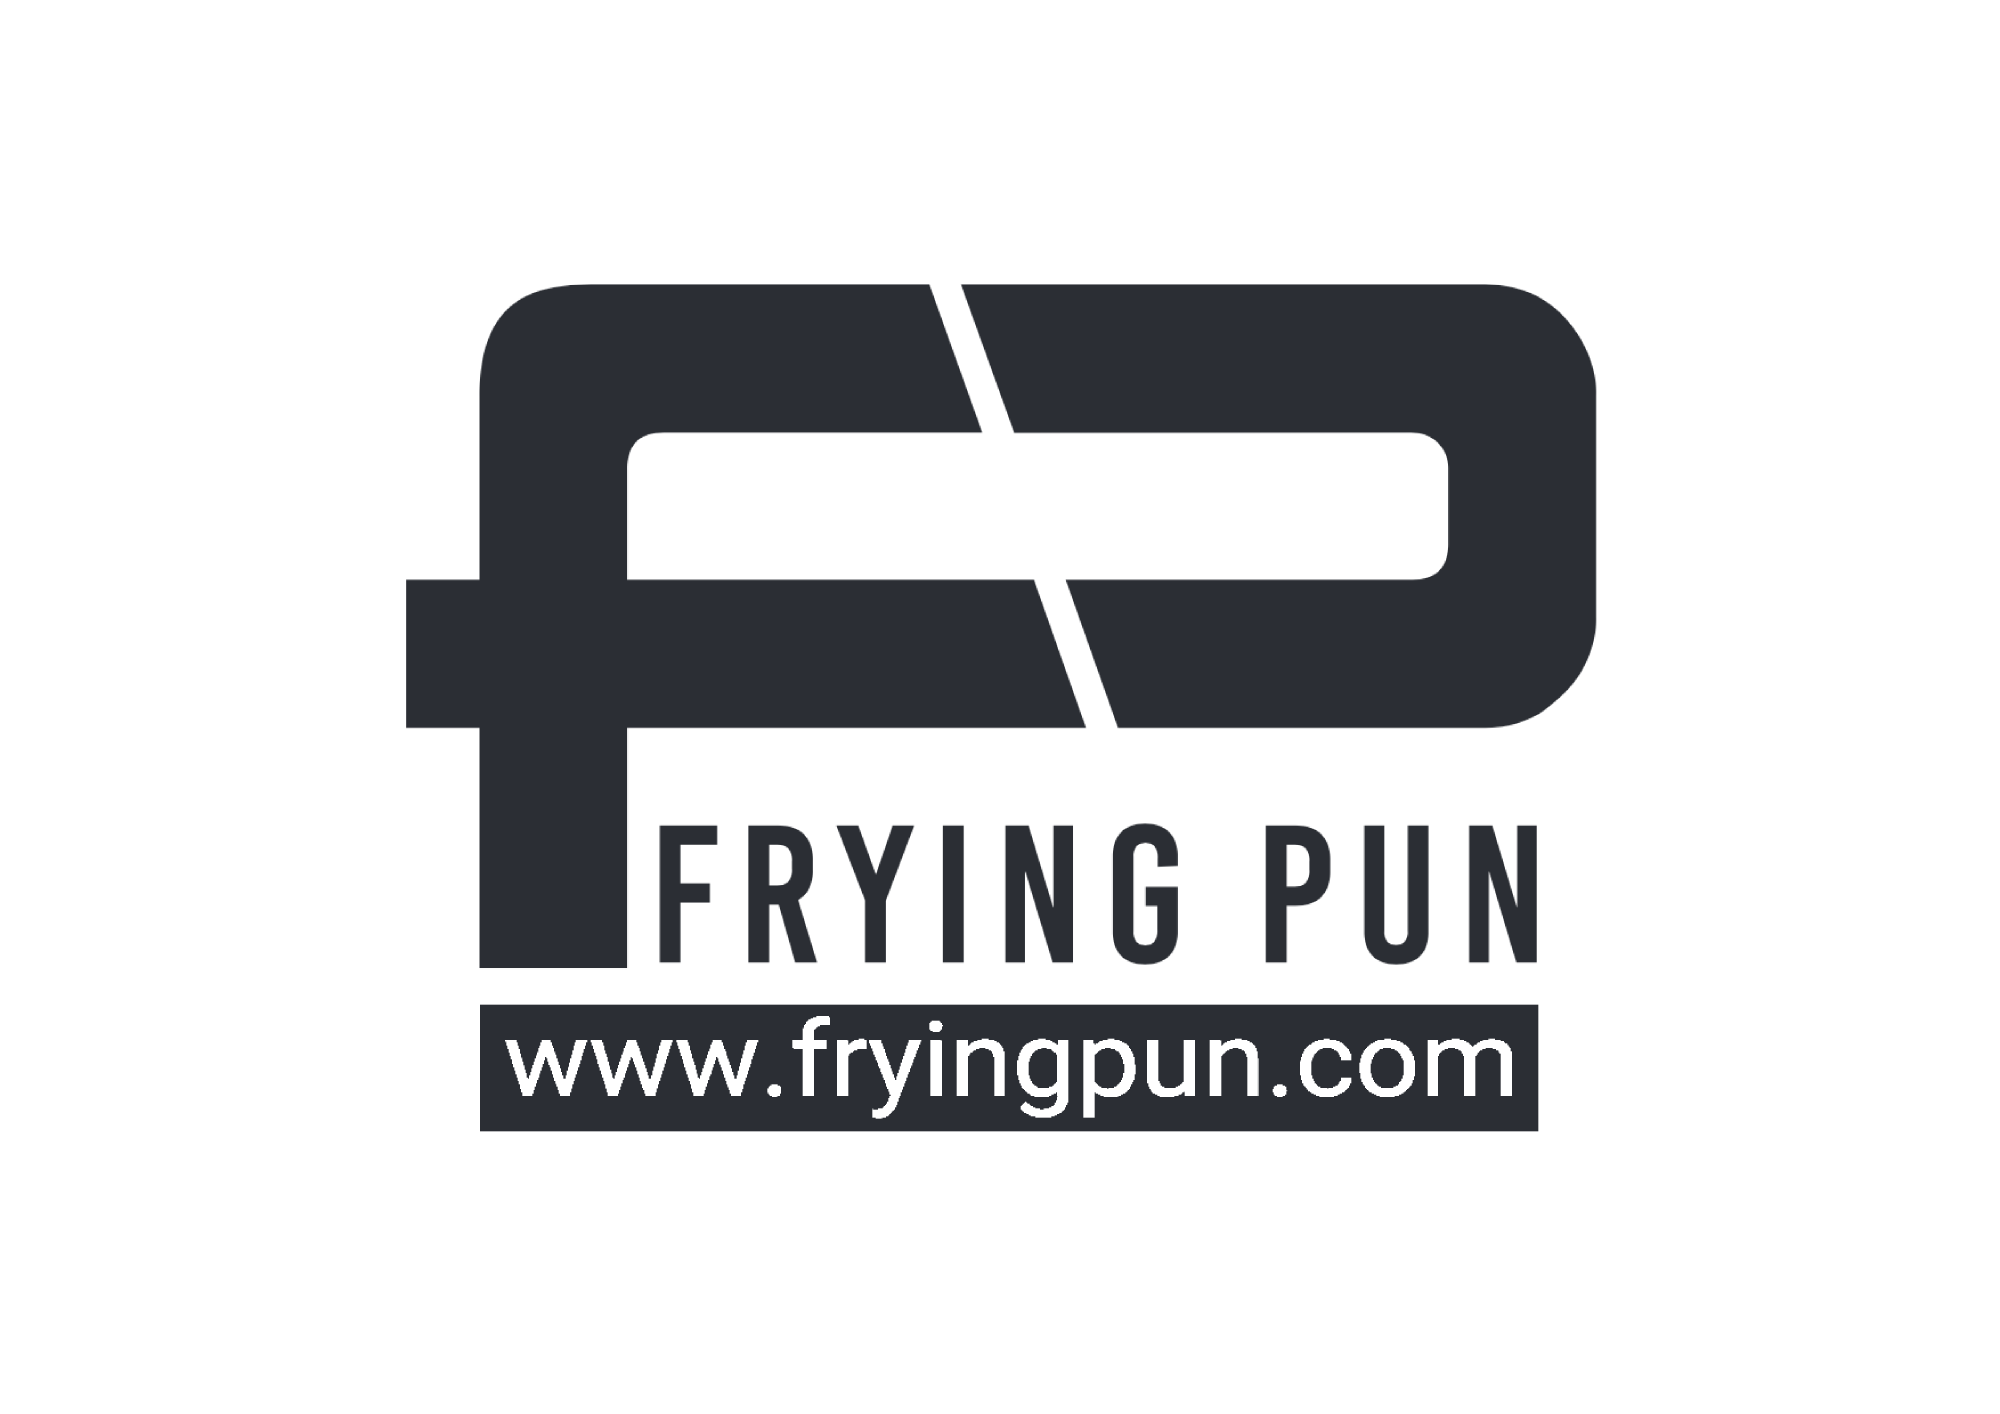 Frying Pun